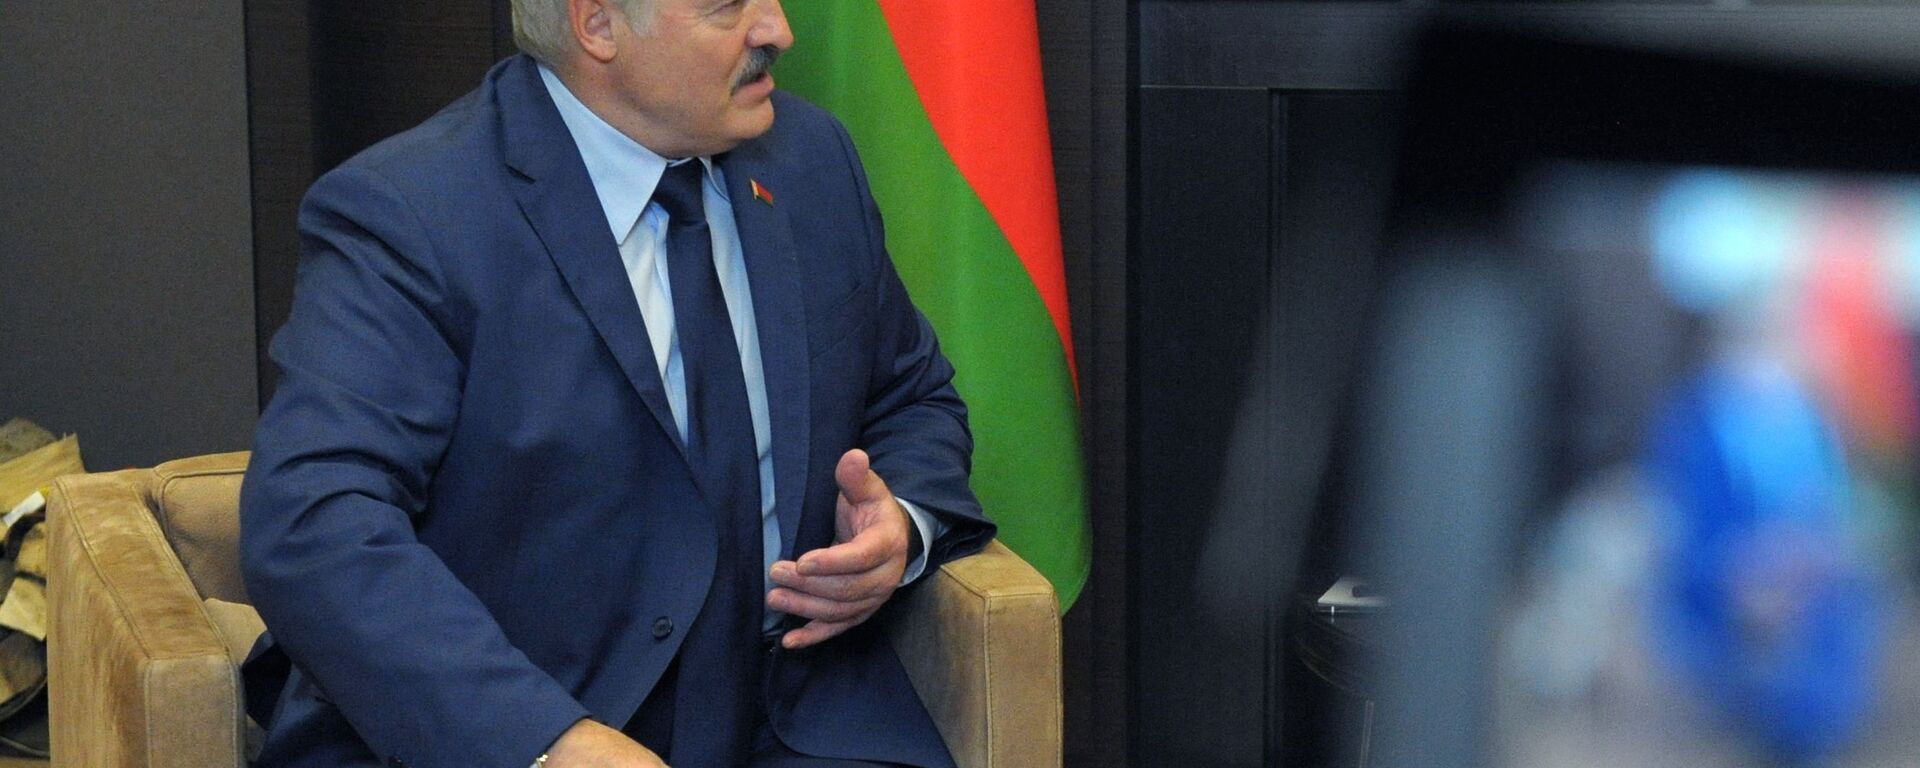 Predsednik Belorusije Aleksandar Lukašenko - Sputnik Srbija, 1920, 04.06.2021